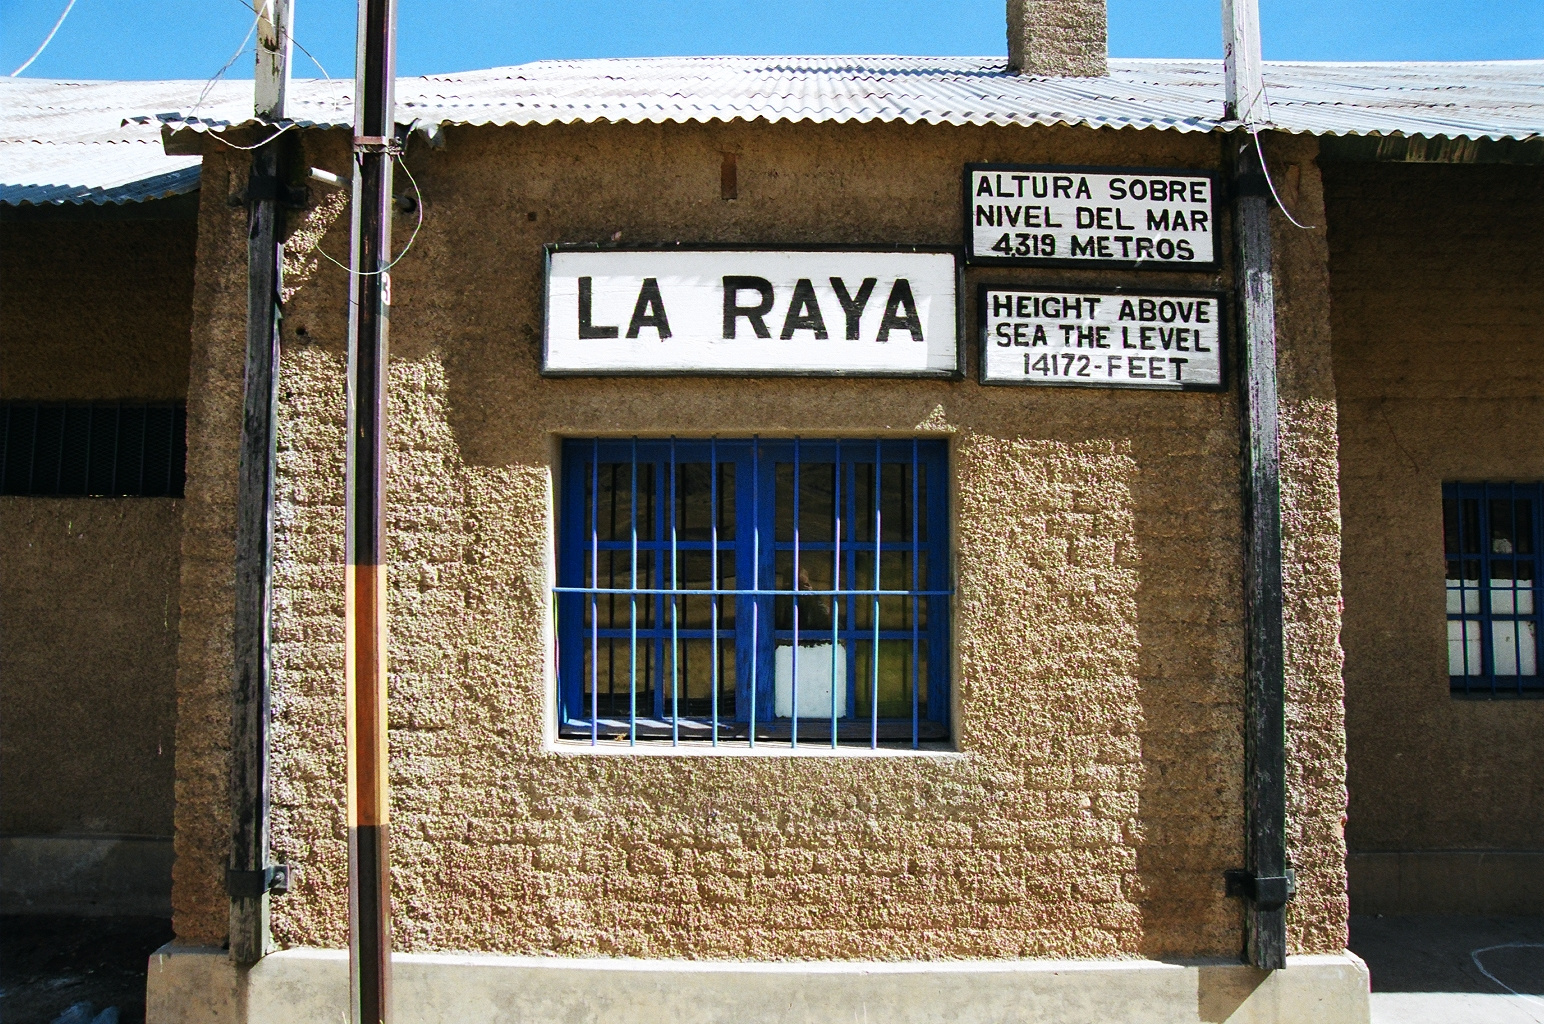 La RAYA